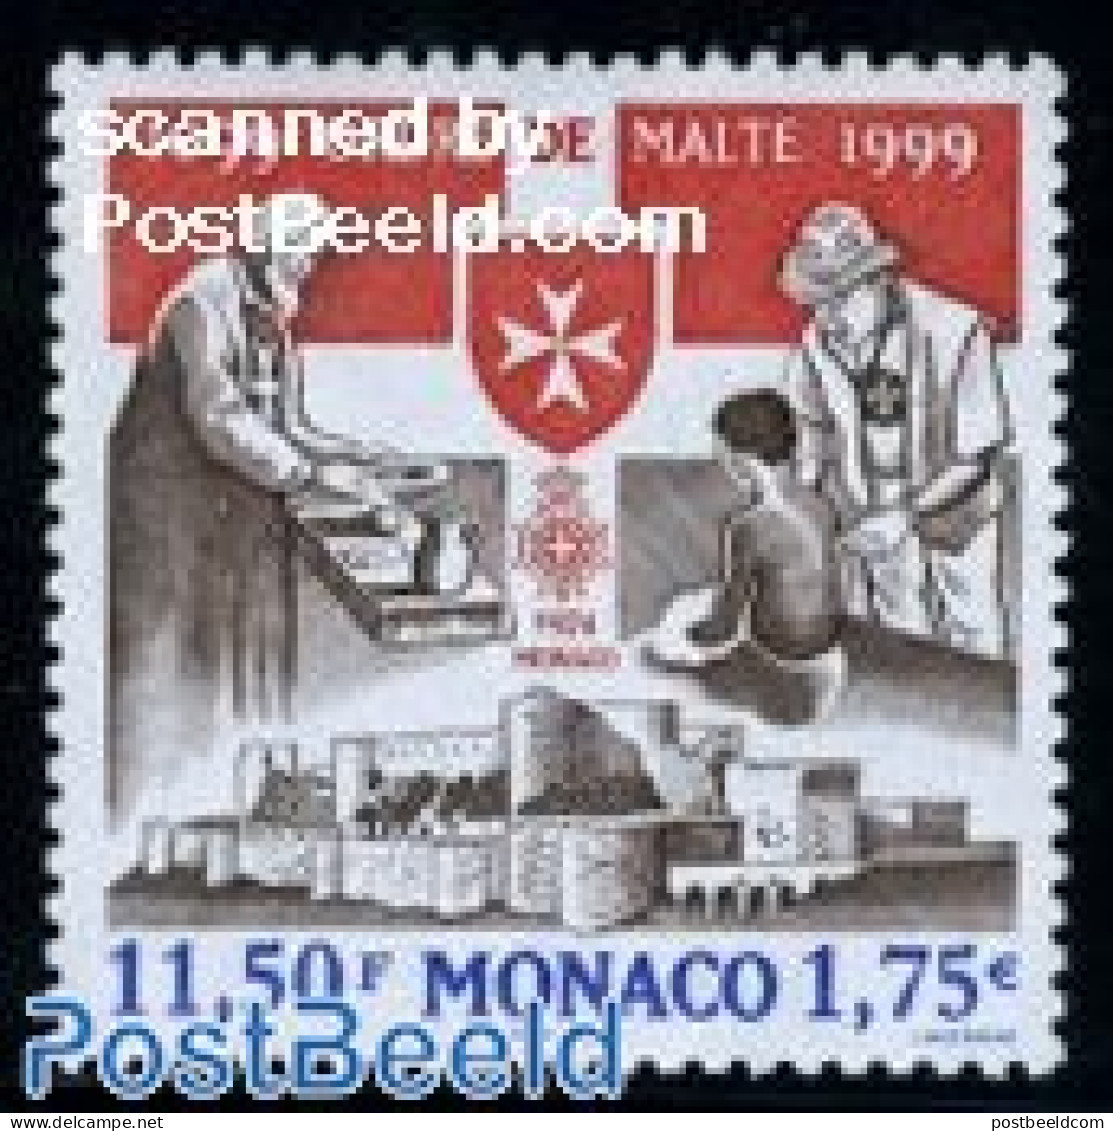 Monaco 1999 Malteser Order 1v, Mint NH, Health - St John - Ongebruikt